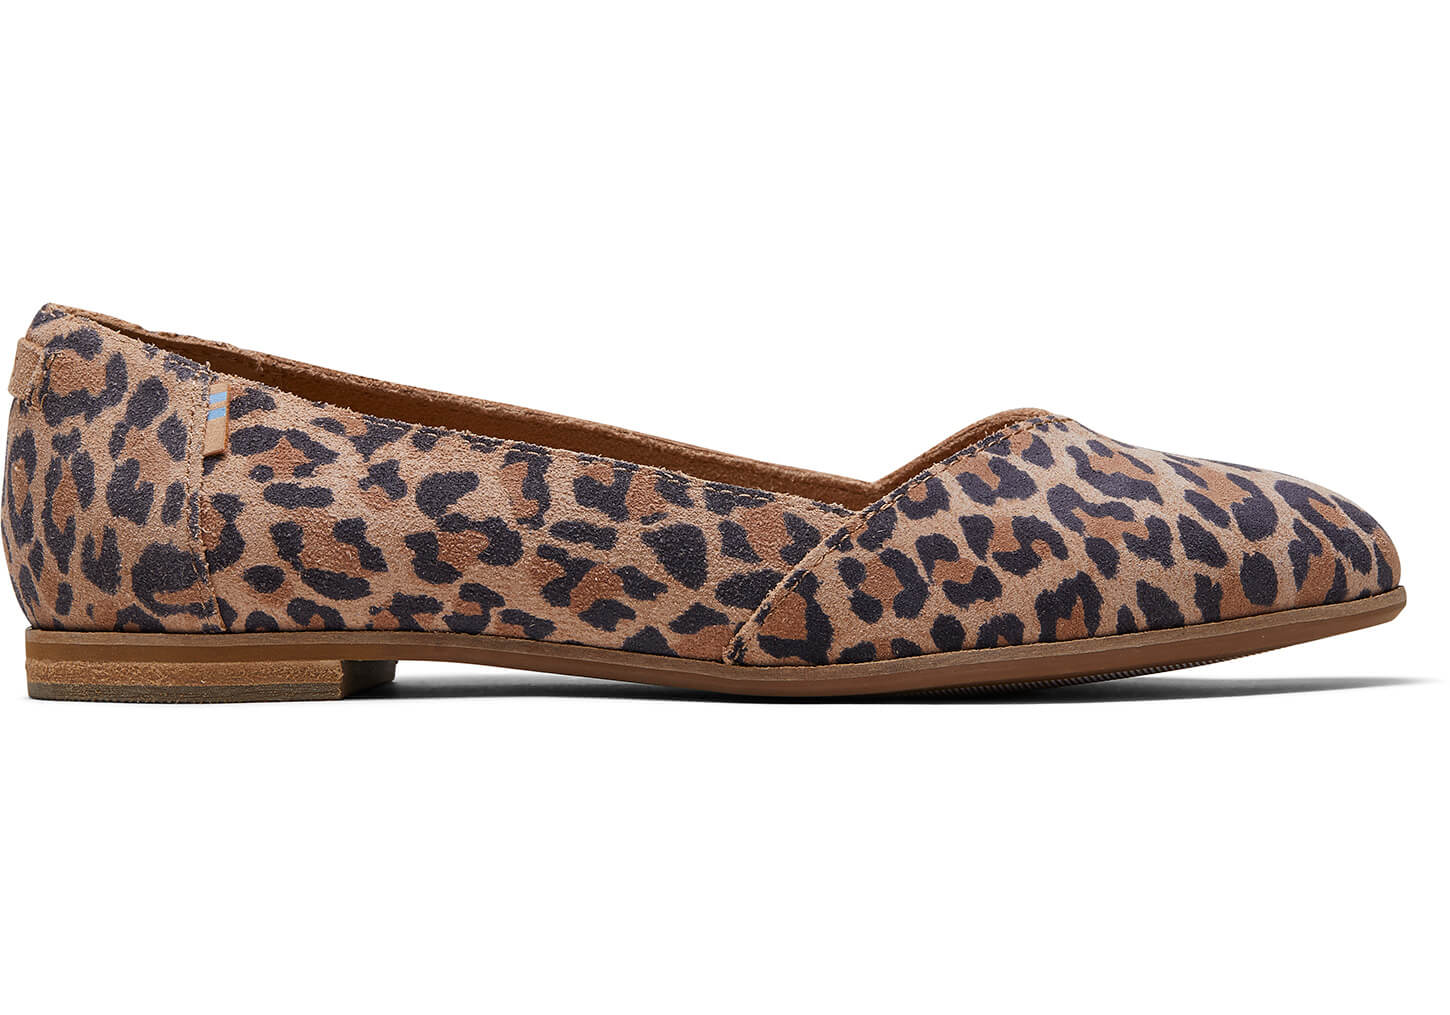 leopard print shoes near me